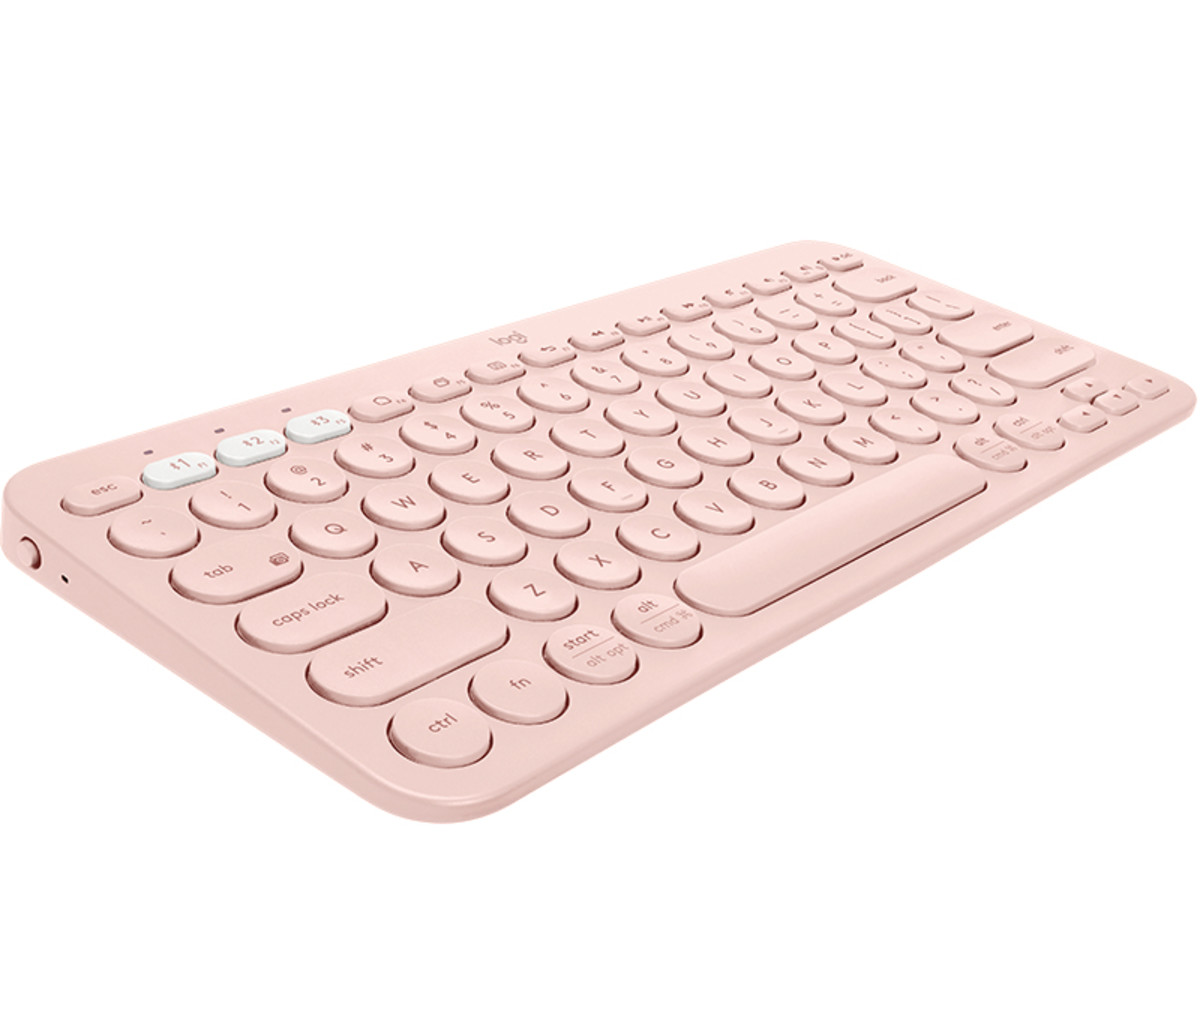 K380 BT Keyboard - Rose